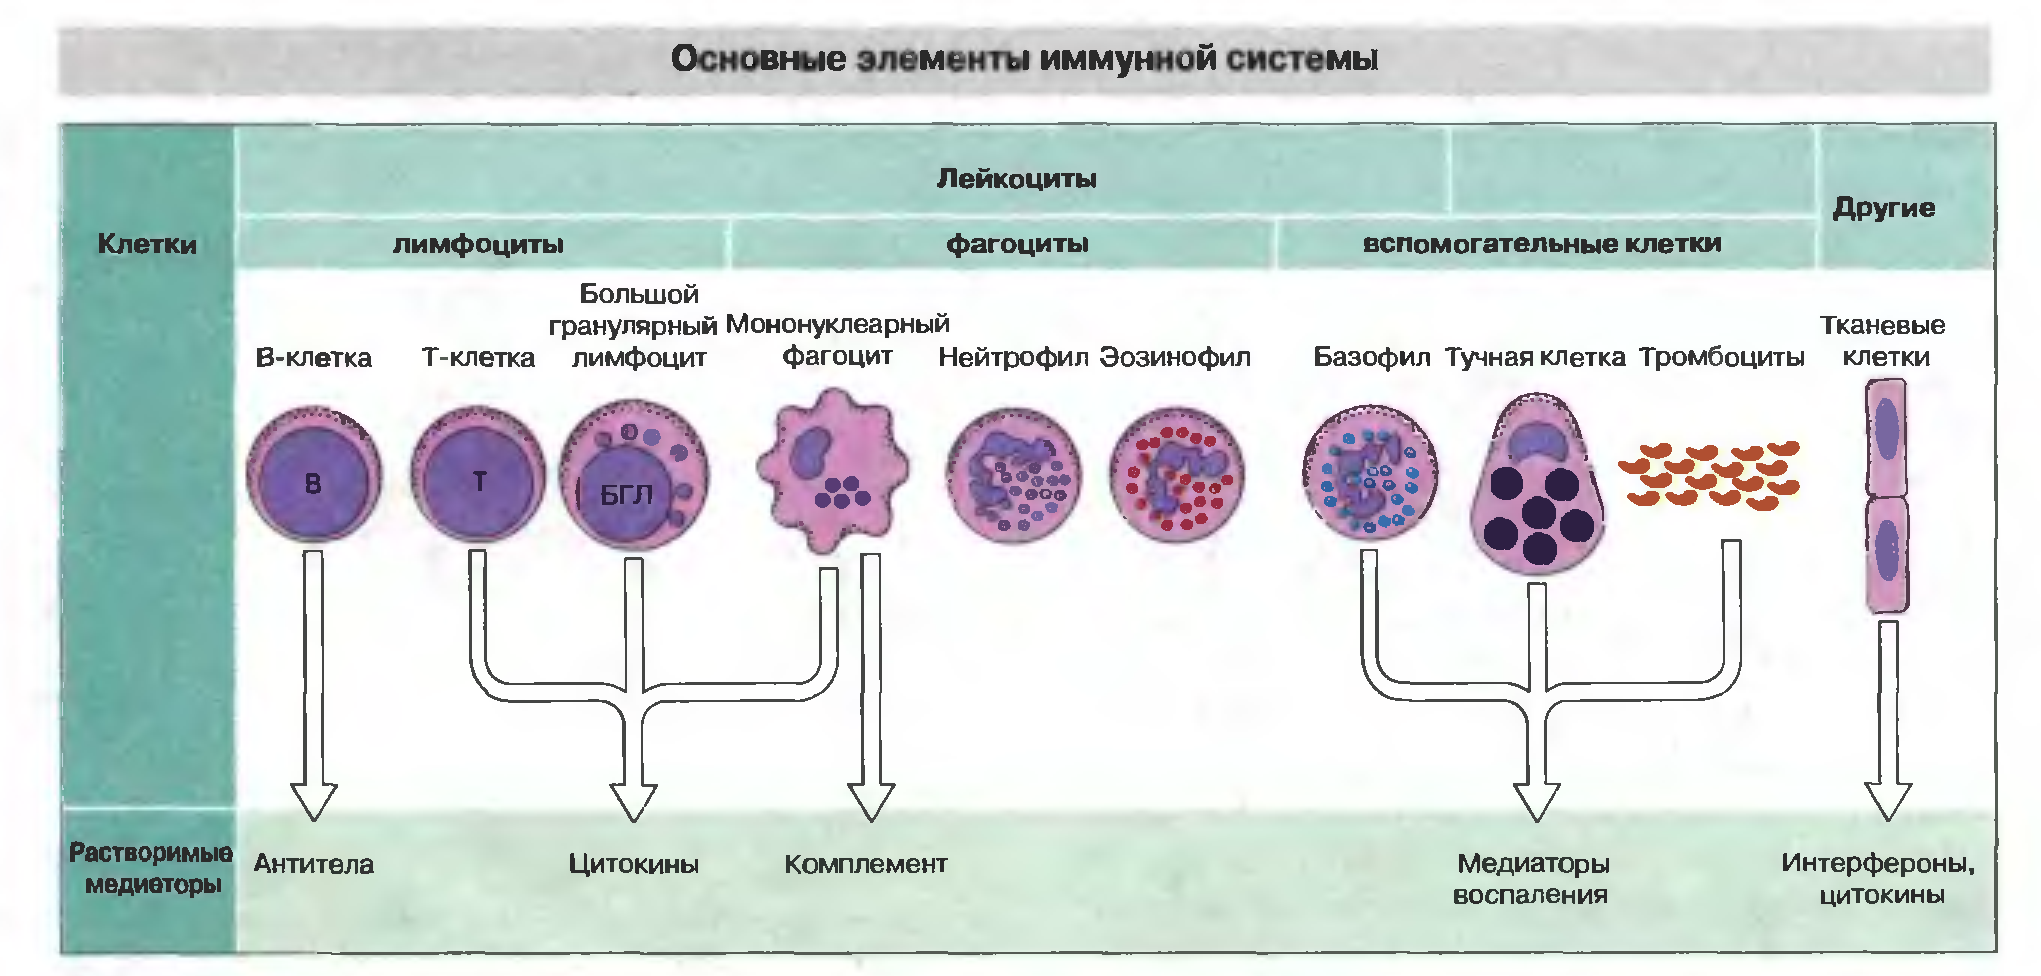 Лекция по теме Клетки иммунной сисемы. Иммунокомпетентные клетки 